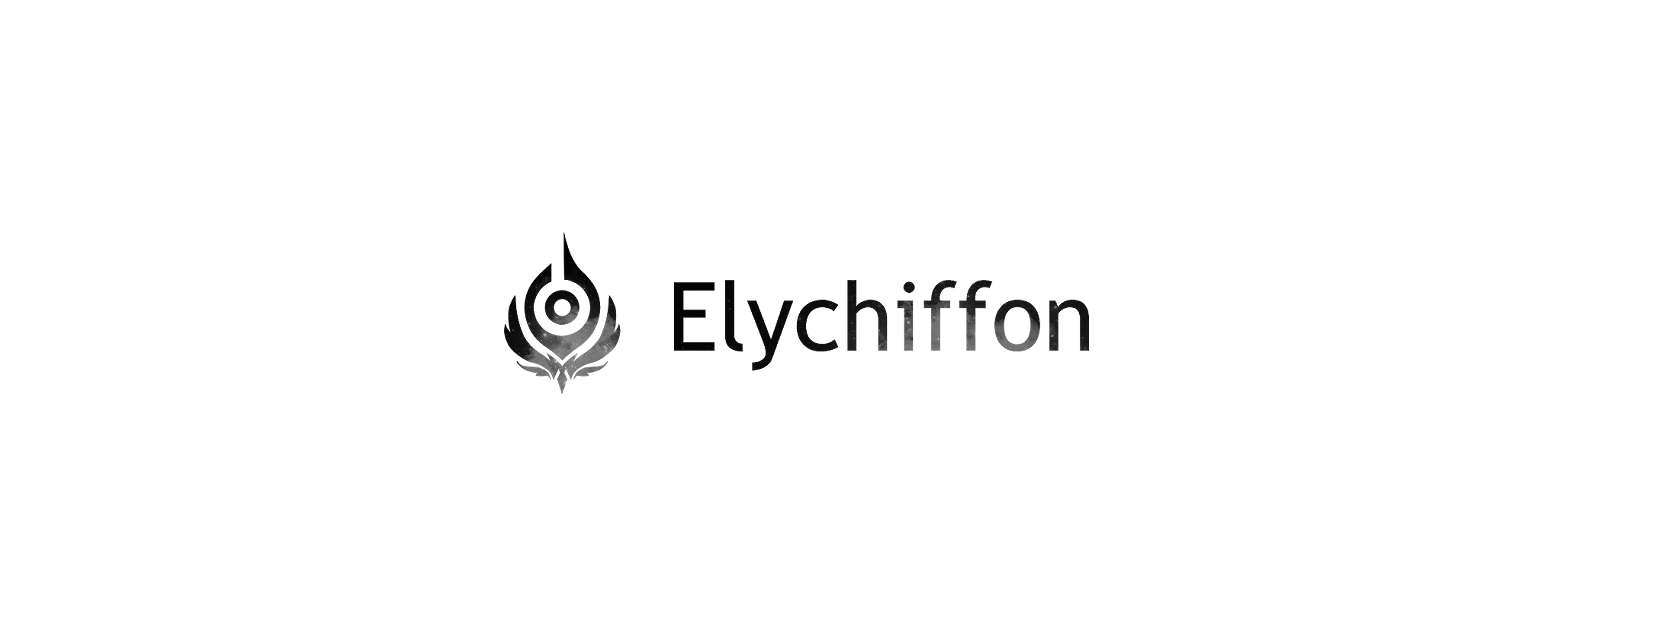 Elychiffon